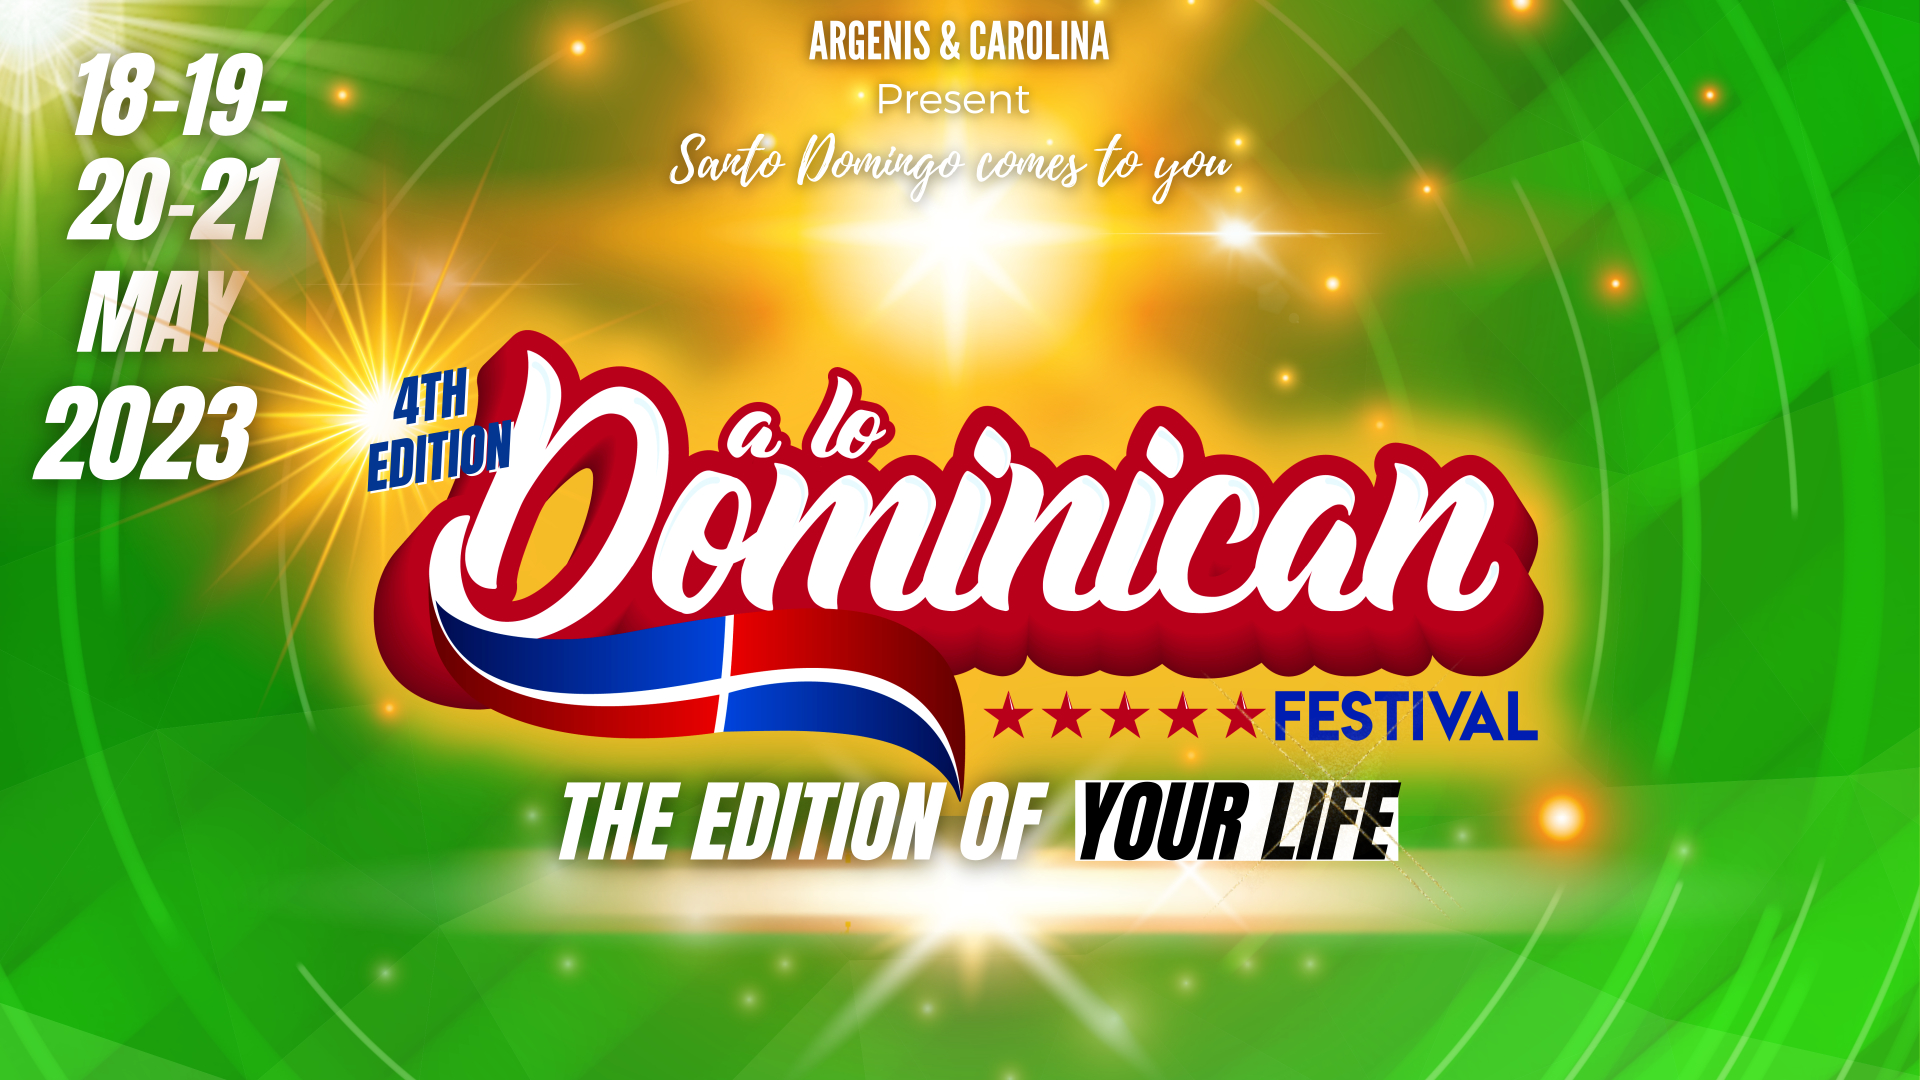 A Lo Dominican Festival 2023 (4ª Edición) go&dance